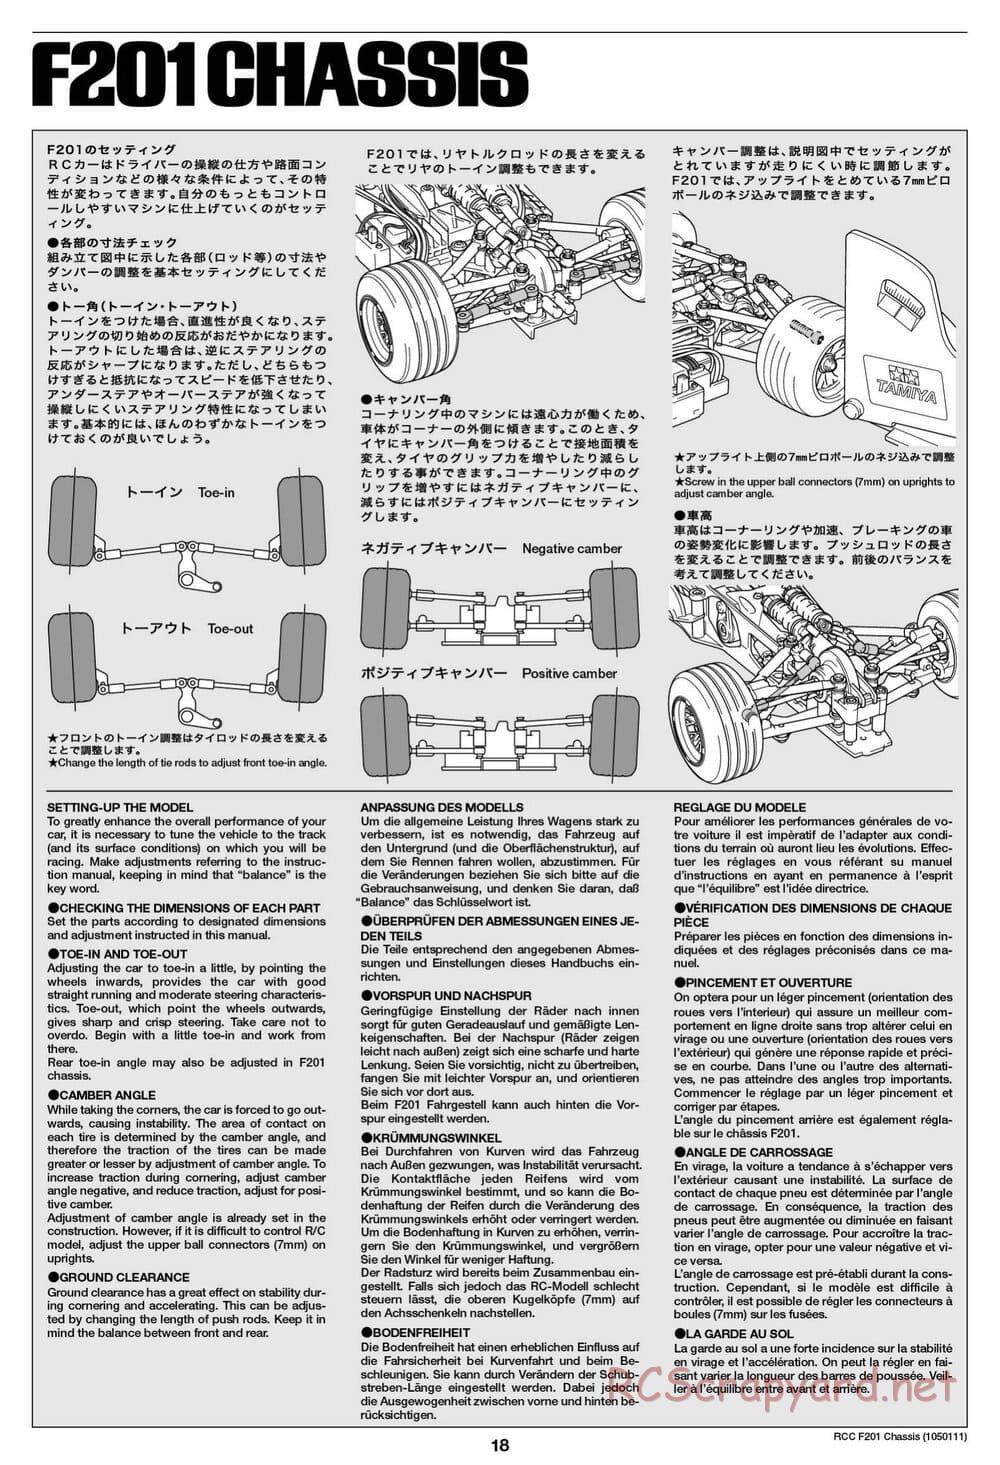 Tamiya - F201 Chassis - Manual - Page 18